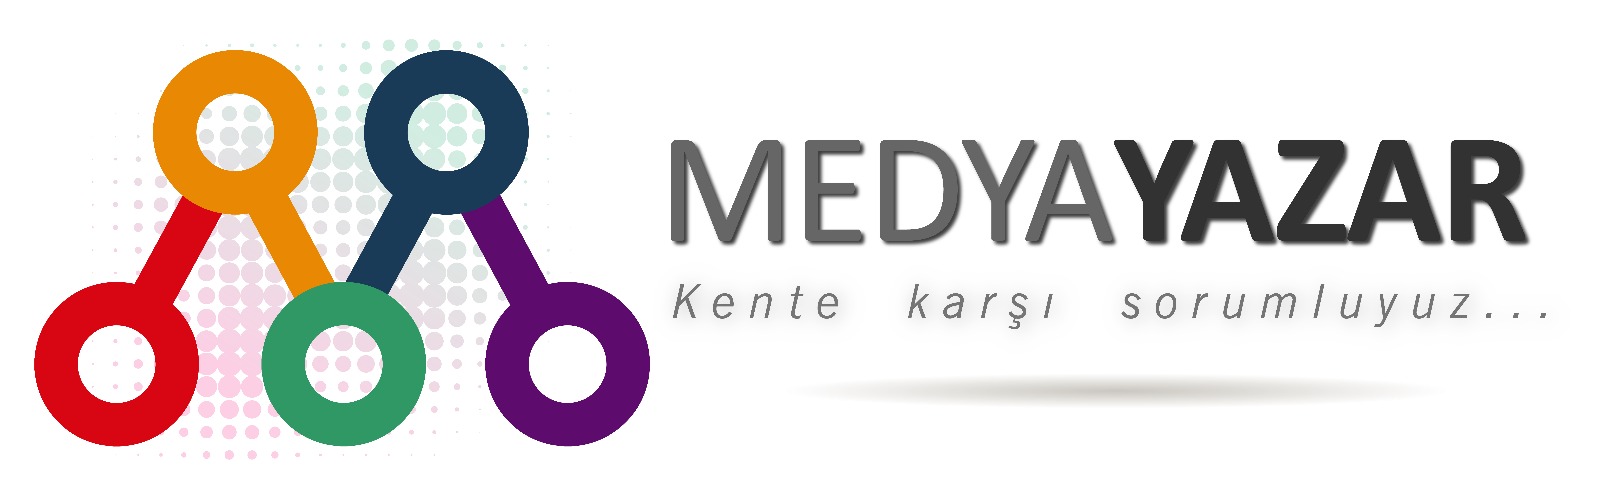 MedyaYazar - Künye